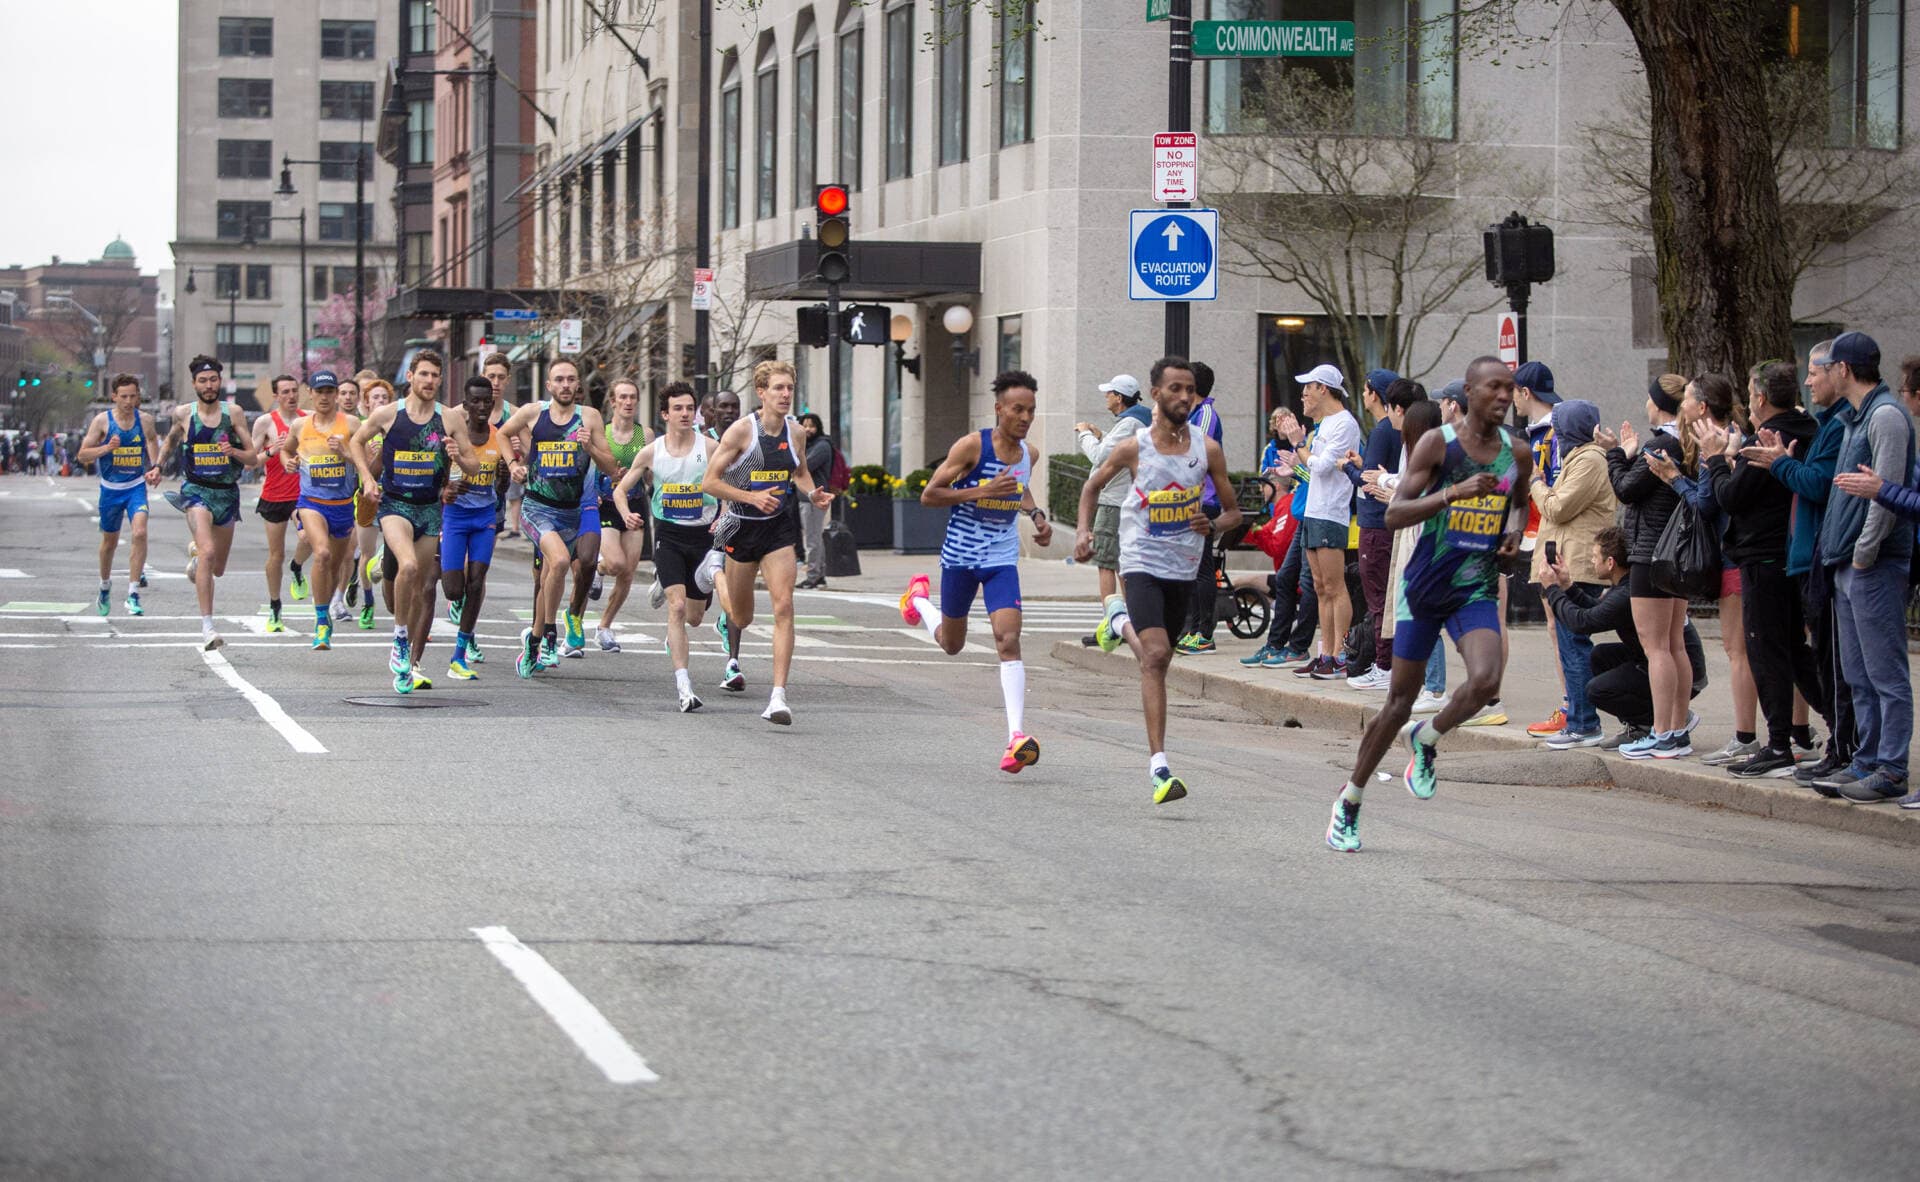 The elite men division of 5K runners speed down Arlington Street. (Robin Lubbock/WBUR)